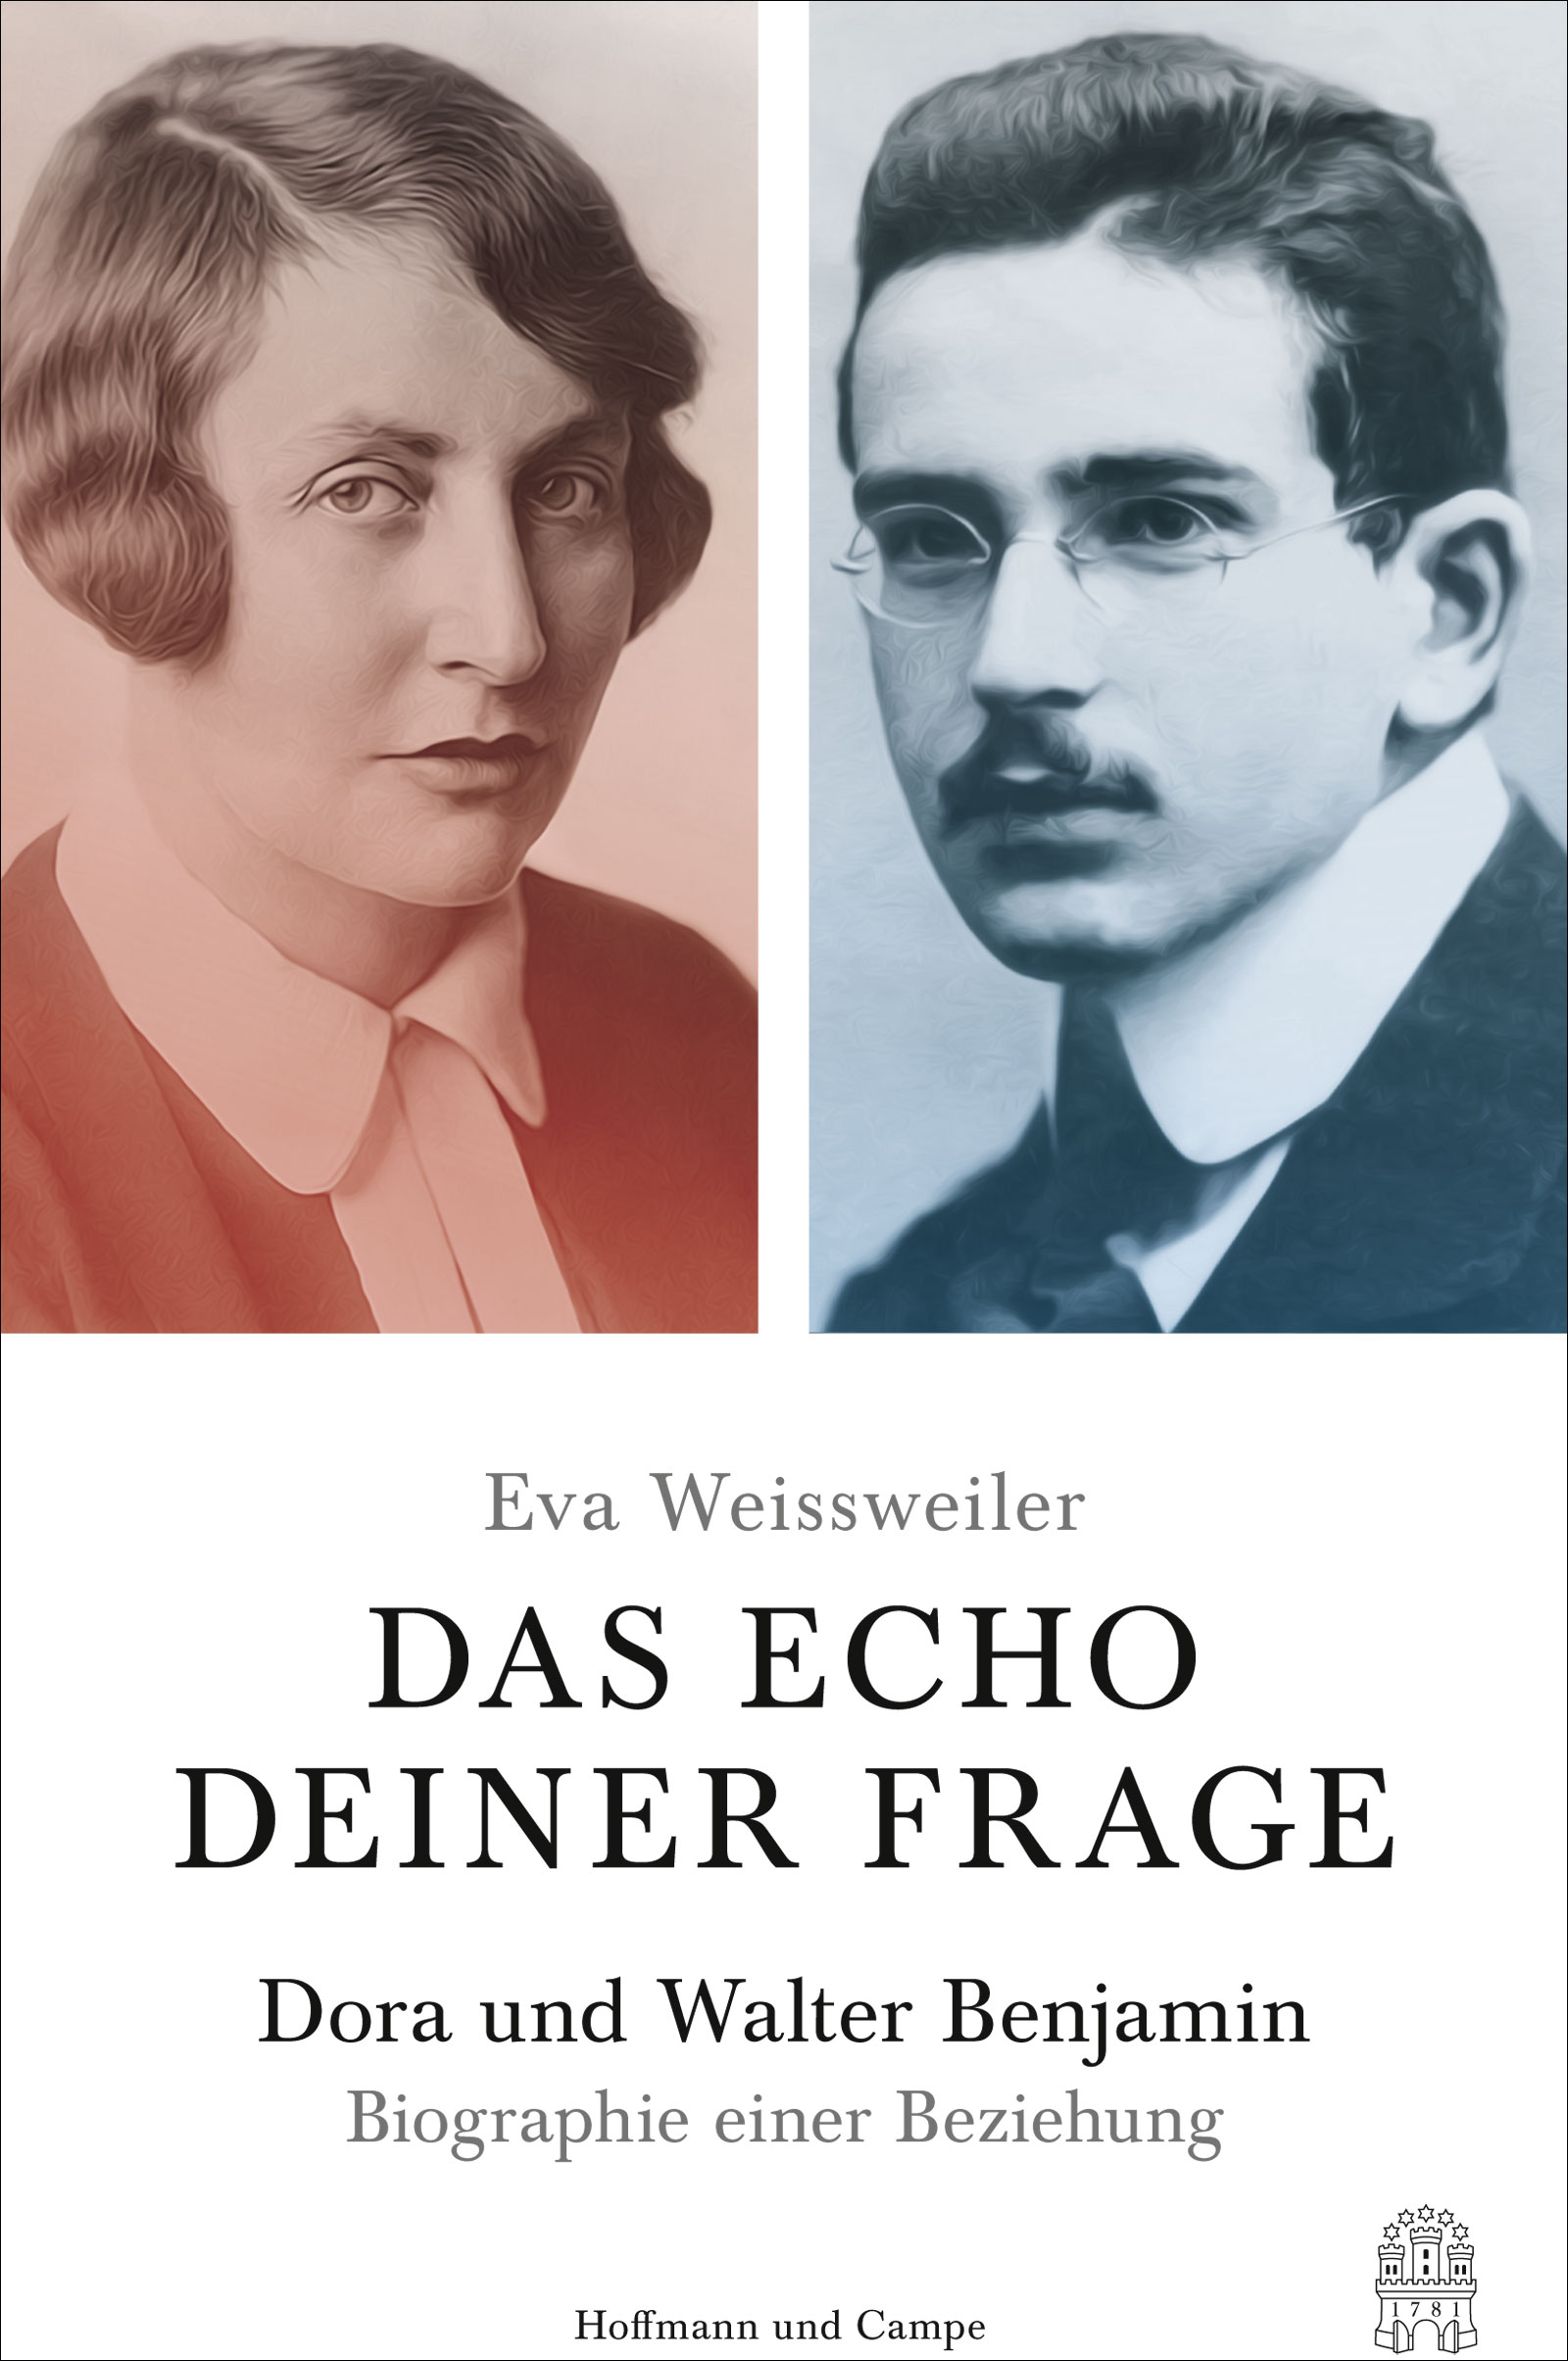 Das Echo deiner Frage. Dora und Walter Benjamin - Biographie einer Beziehung von Eva Weissweiler Parkbuchhandlung Buchhandlung Bonn Bad Godesberg